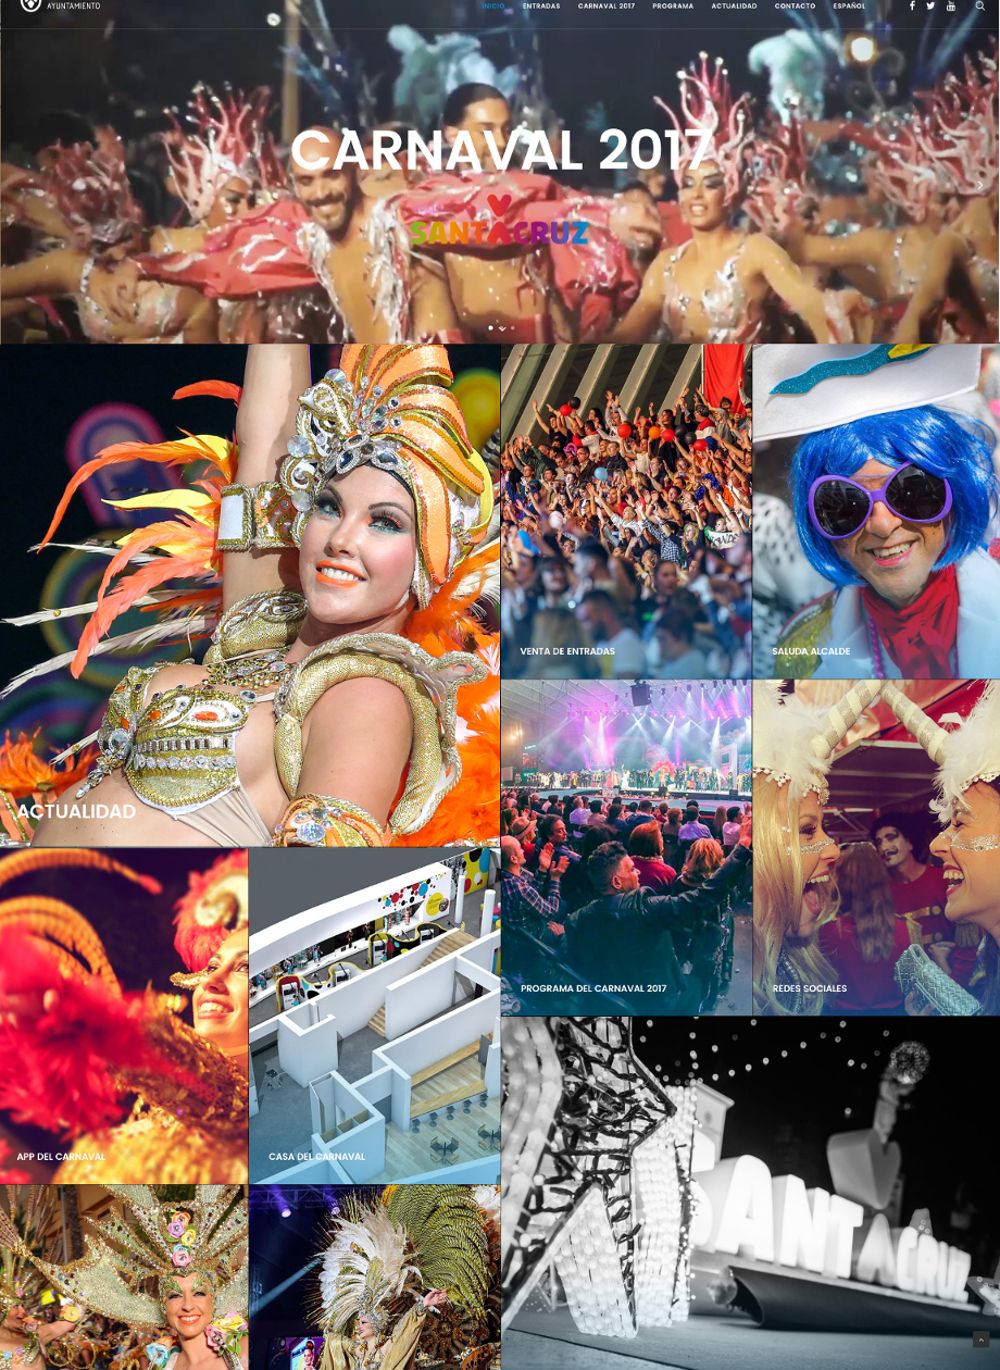 Página web oficial del Carnaval chicharrero.